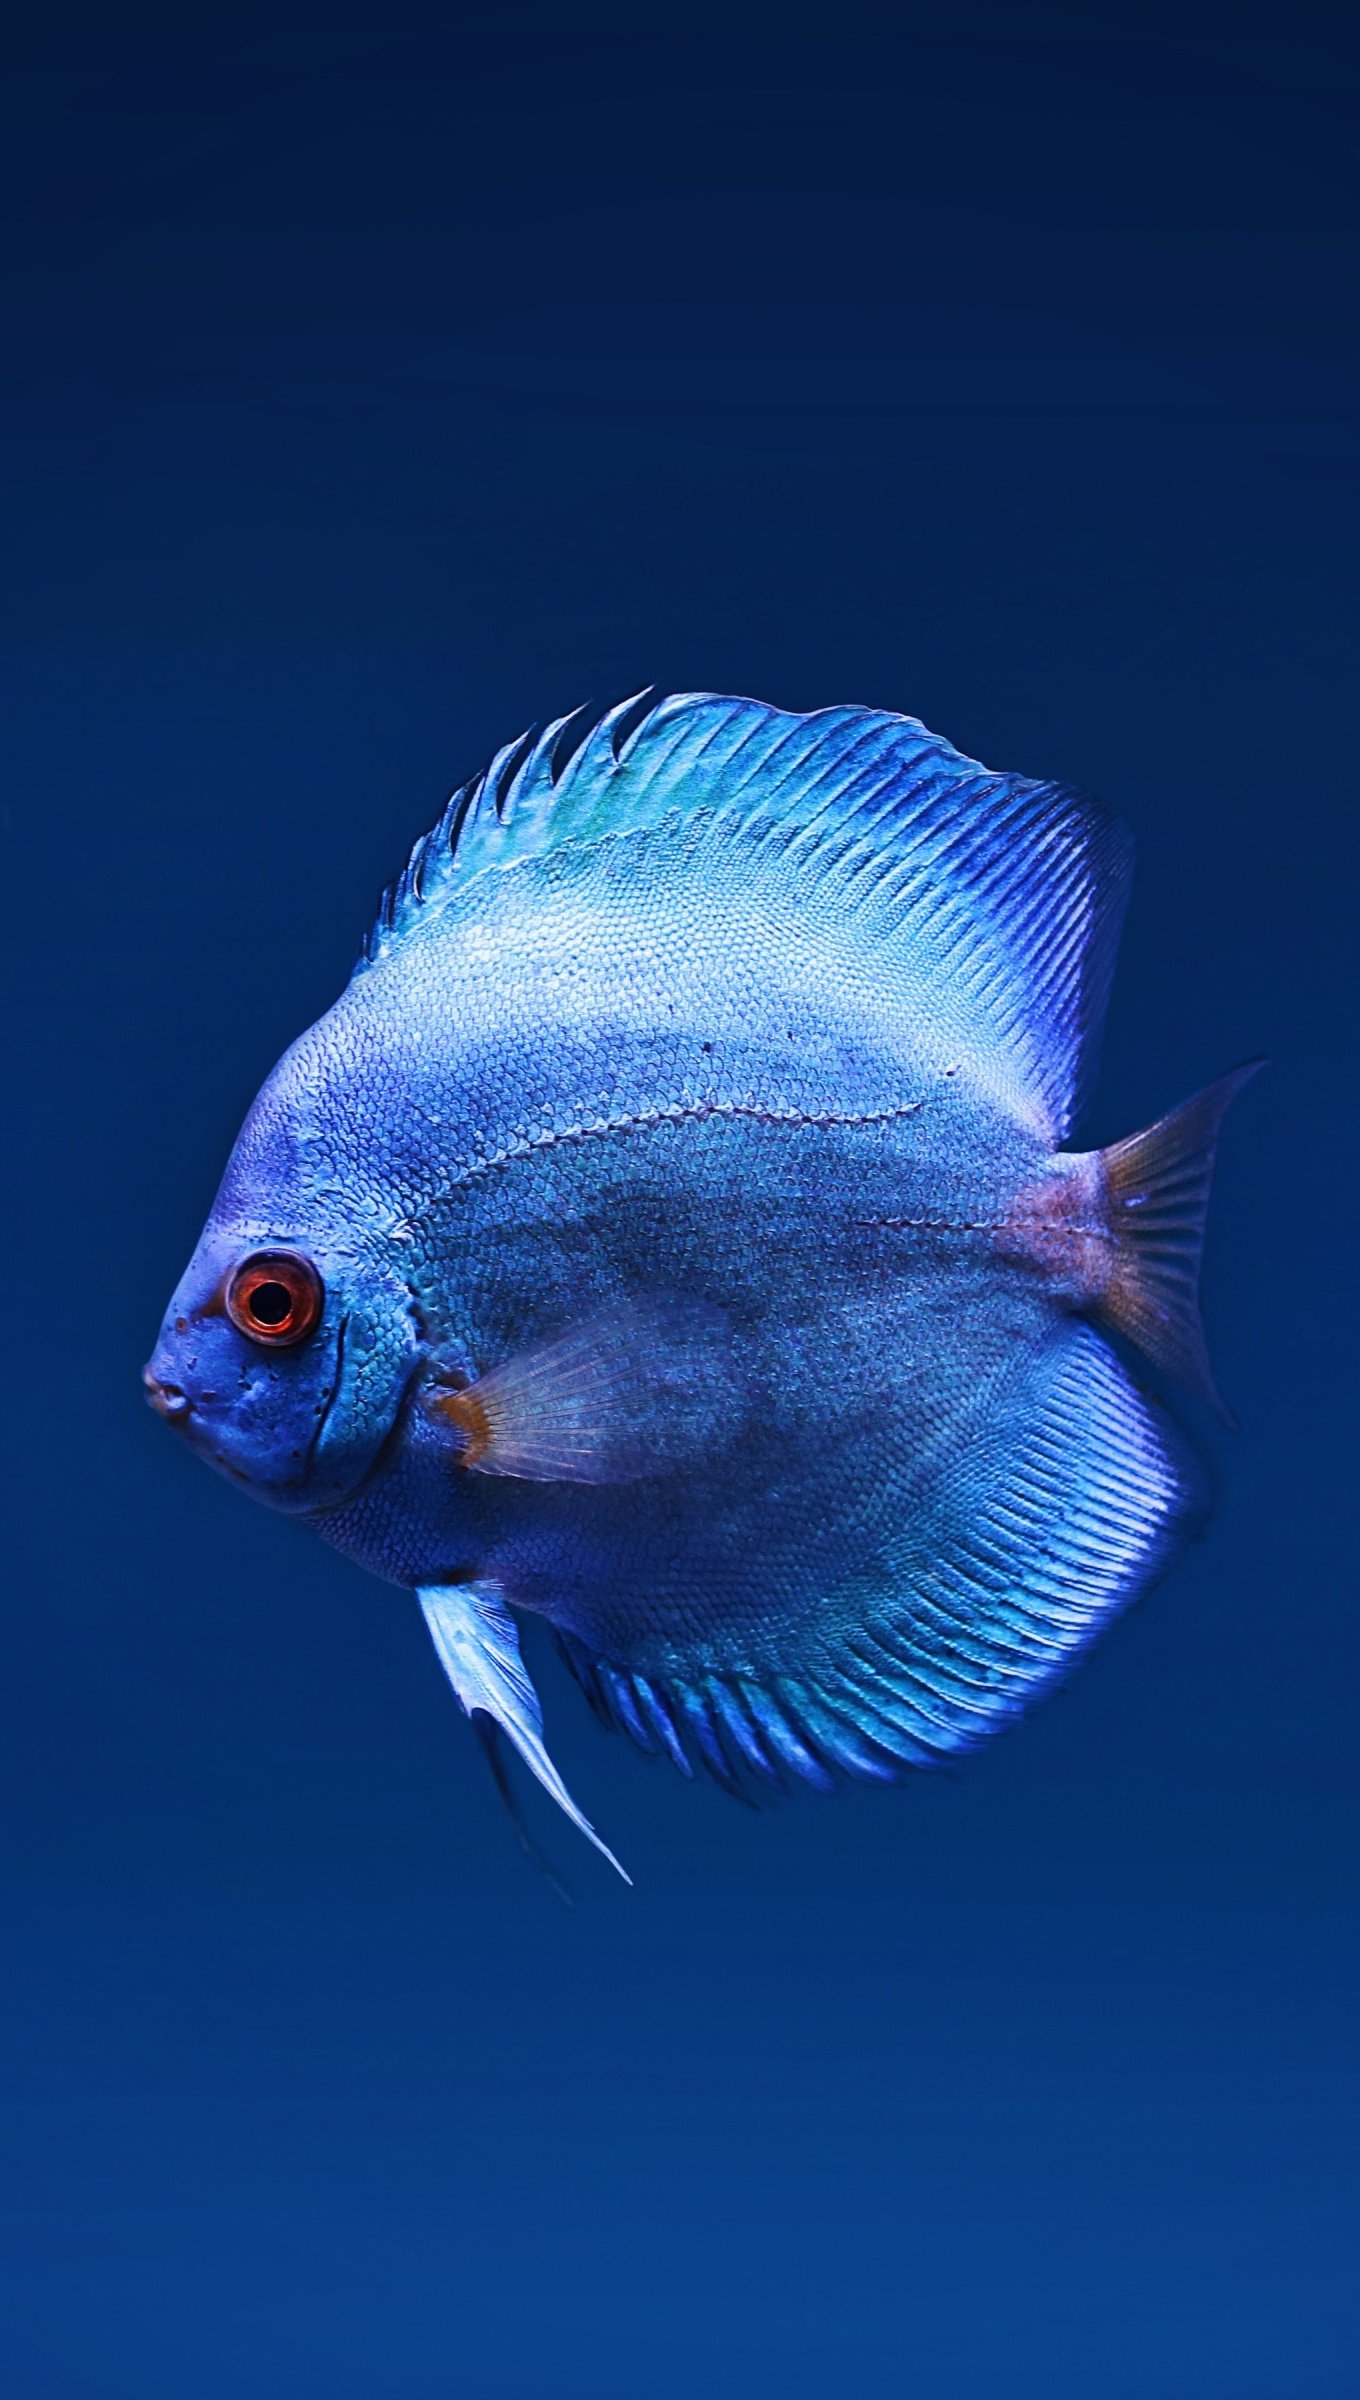 Blue Discus fish Wallpaper 4k Ultra HD ID:4891